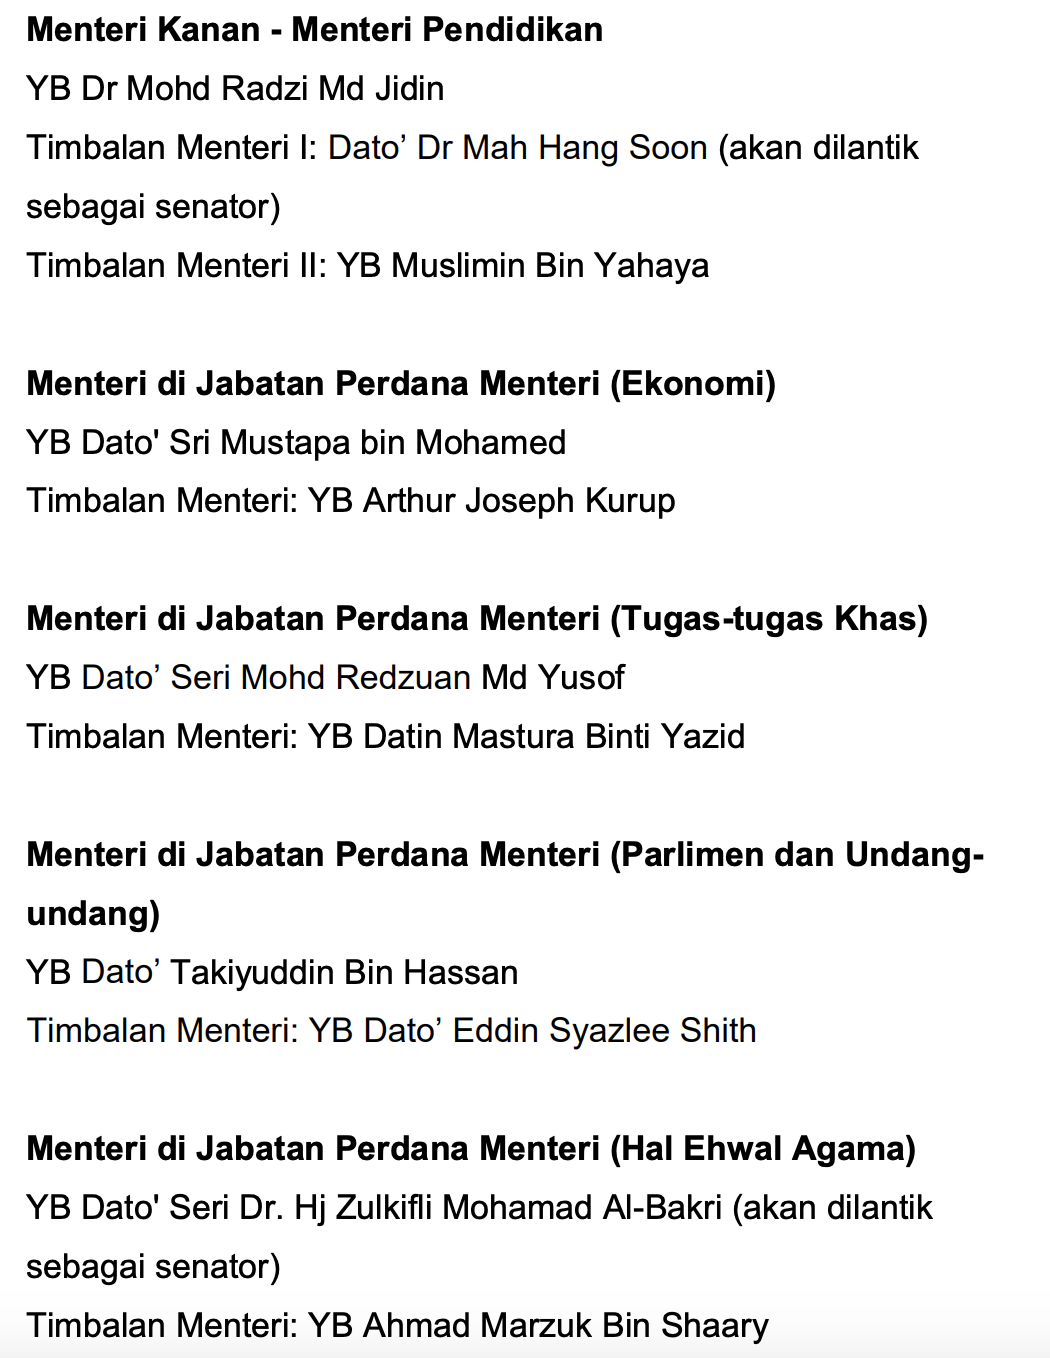 Senarai Menteri Kabinet 2020